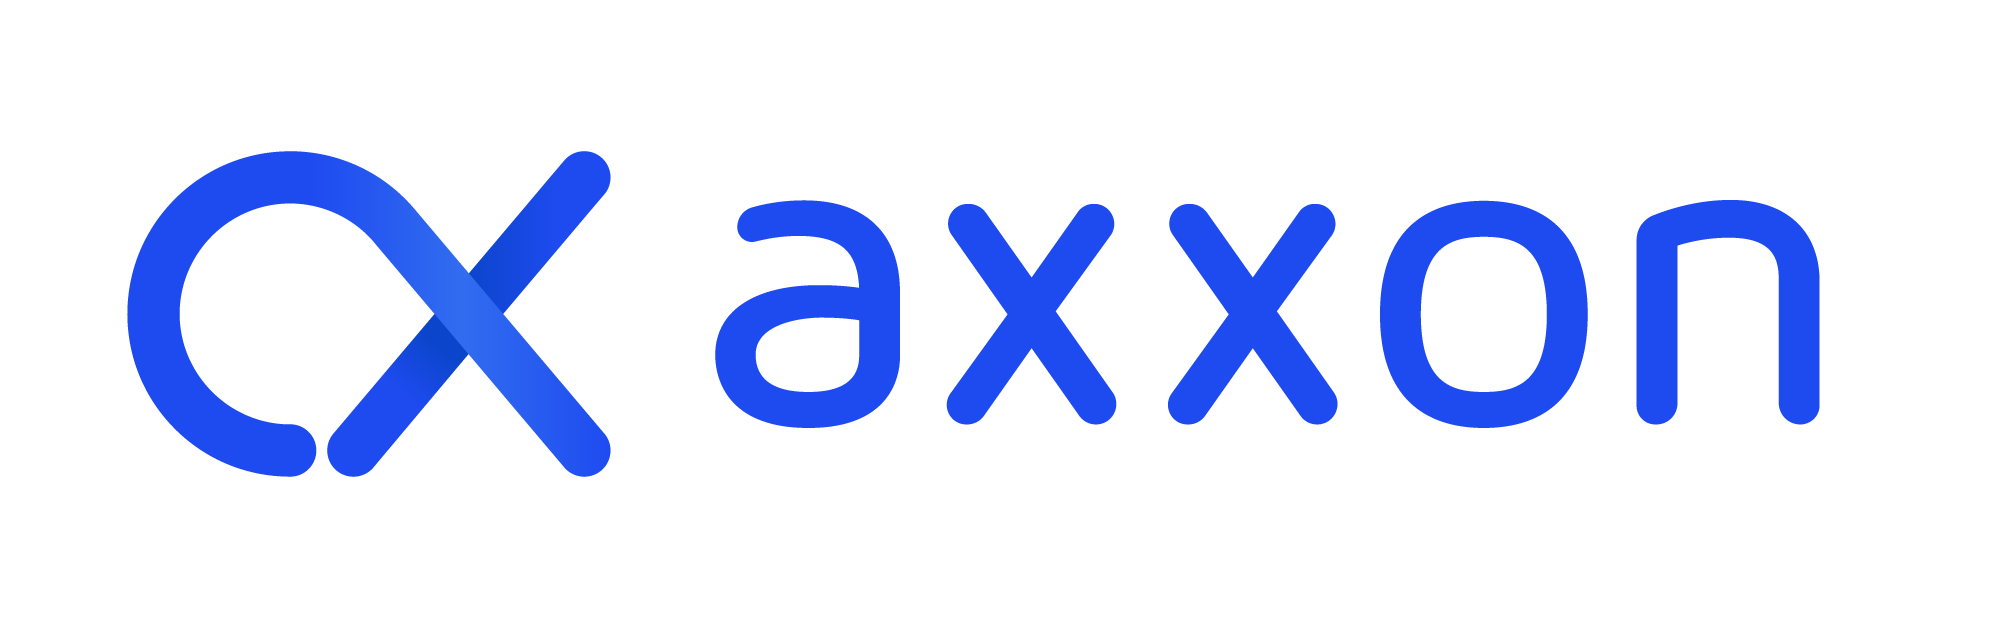 Axxon-1